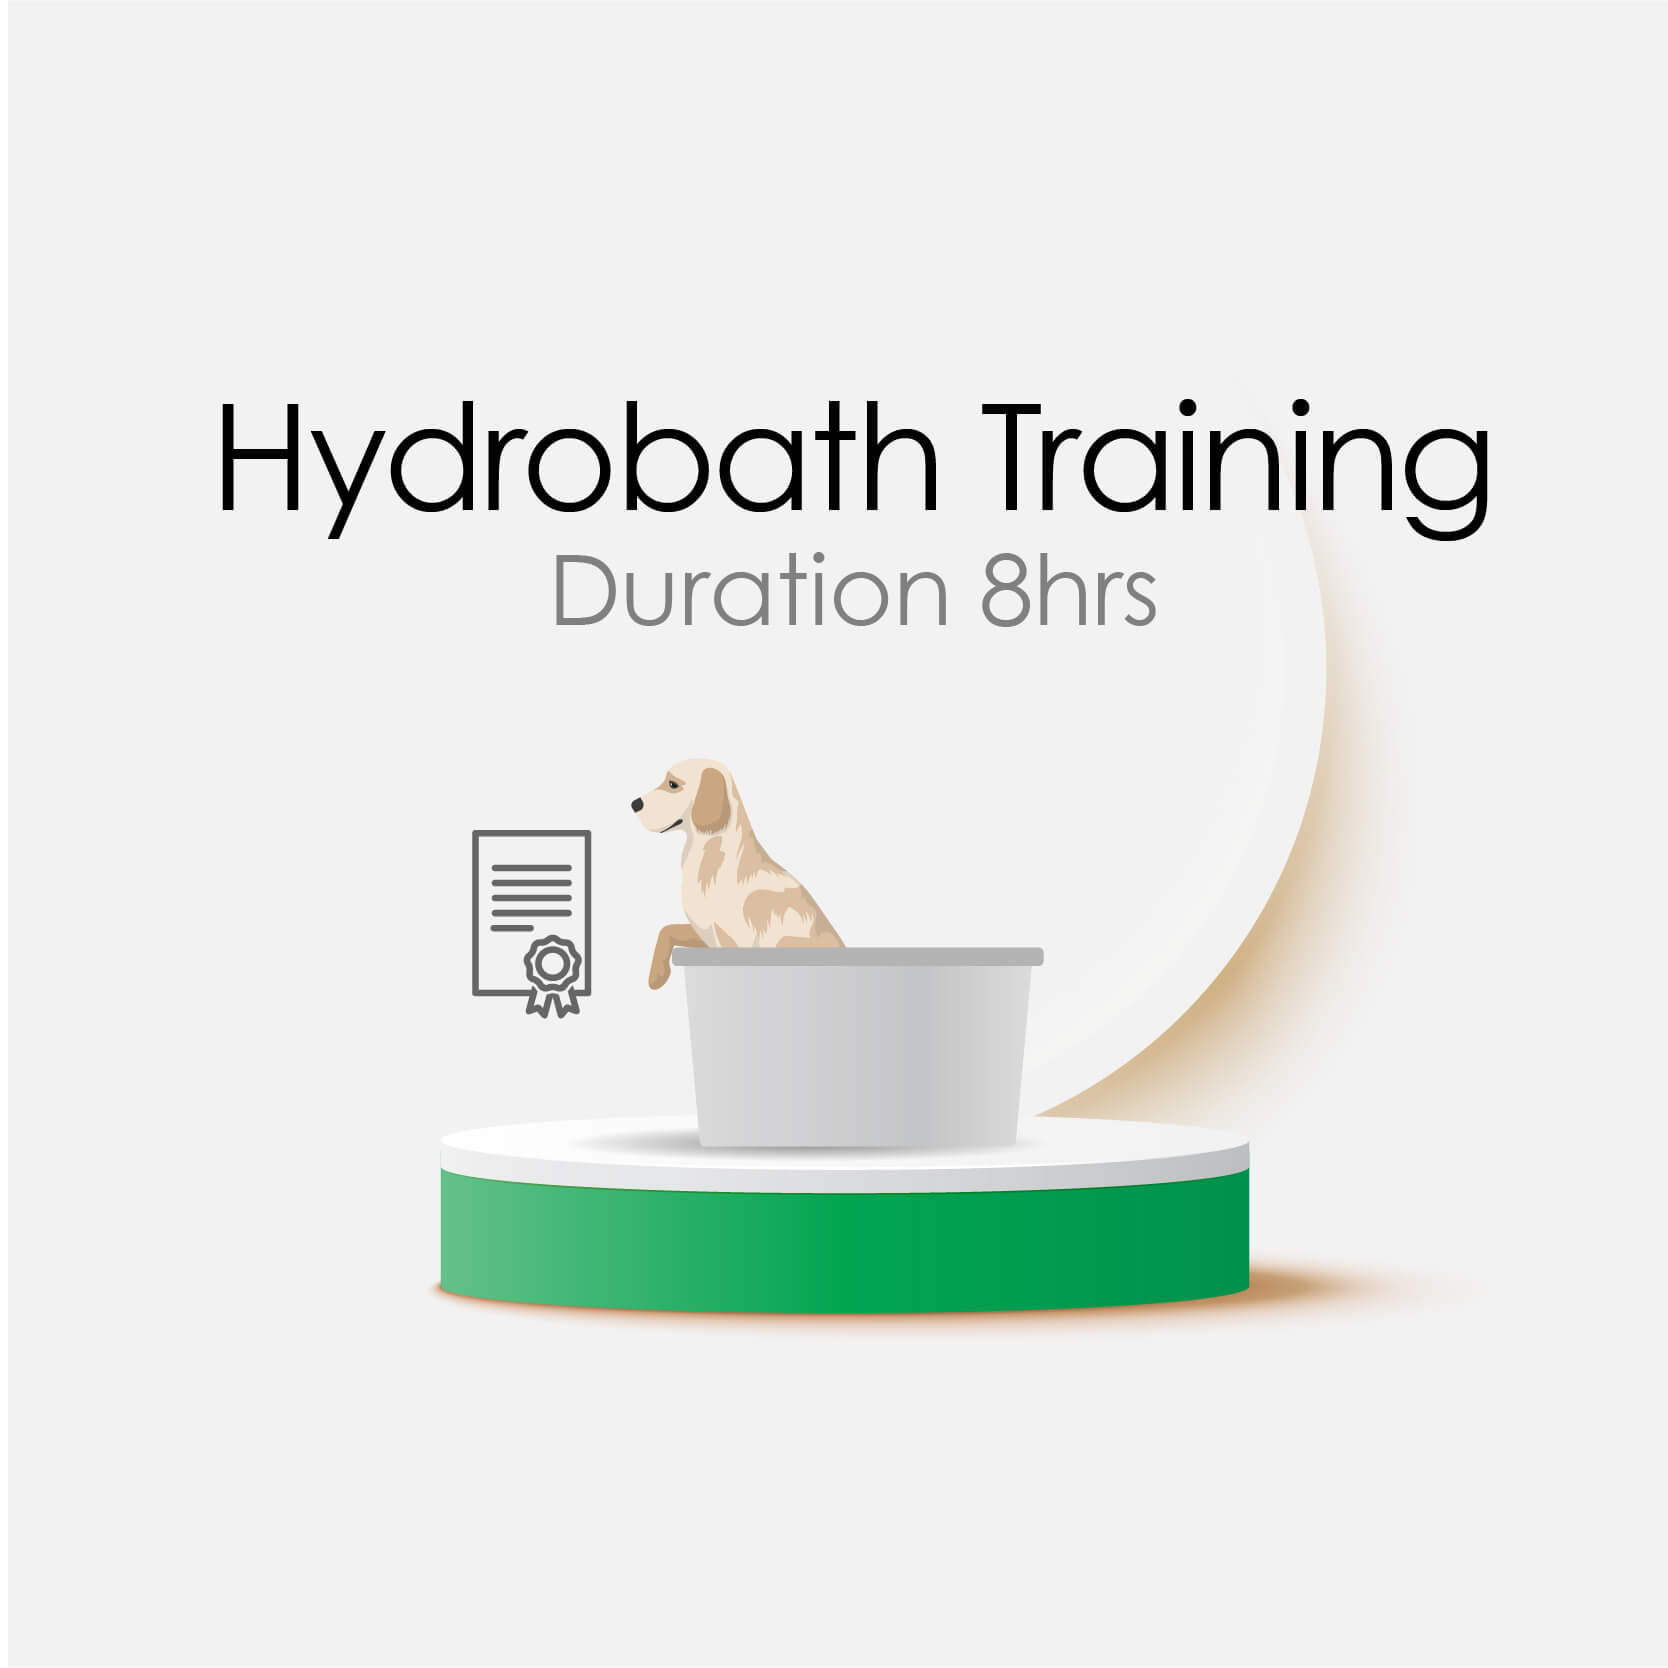 Hydrobath Training